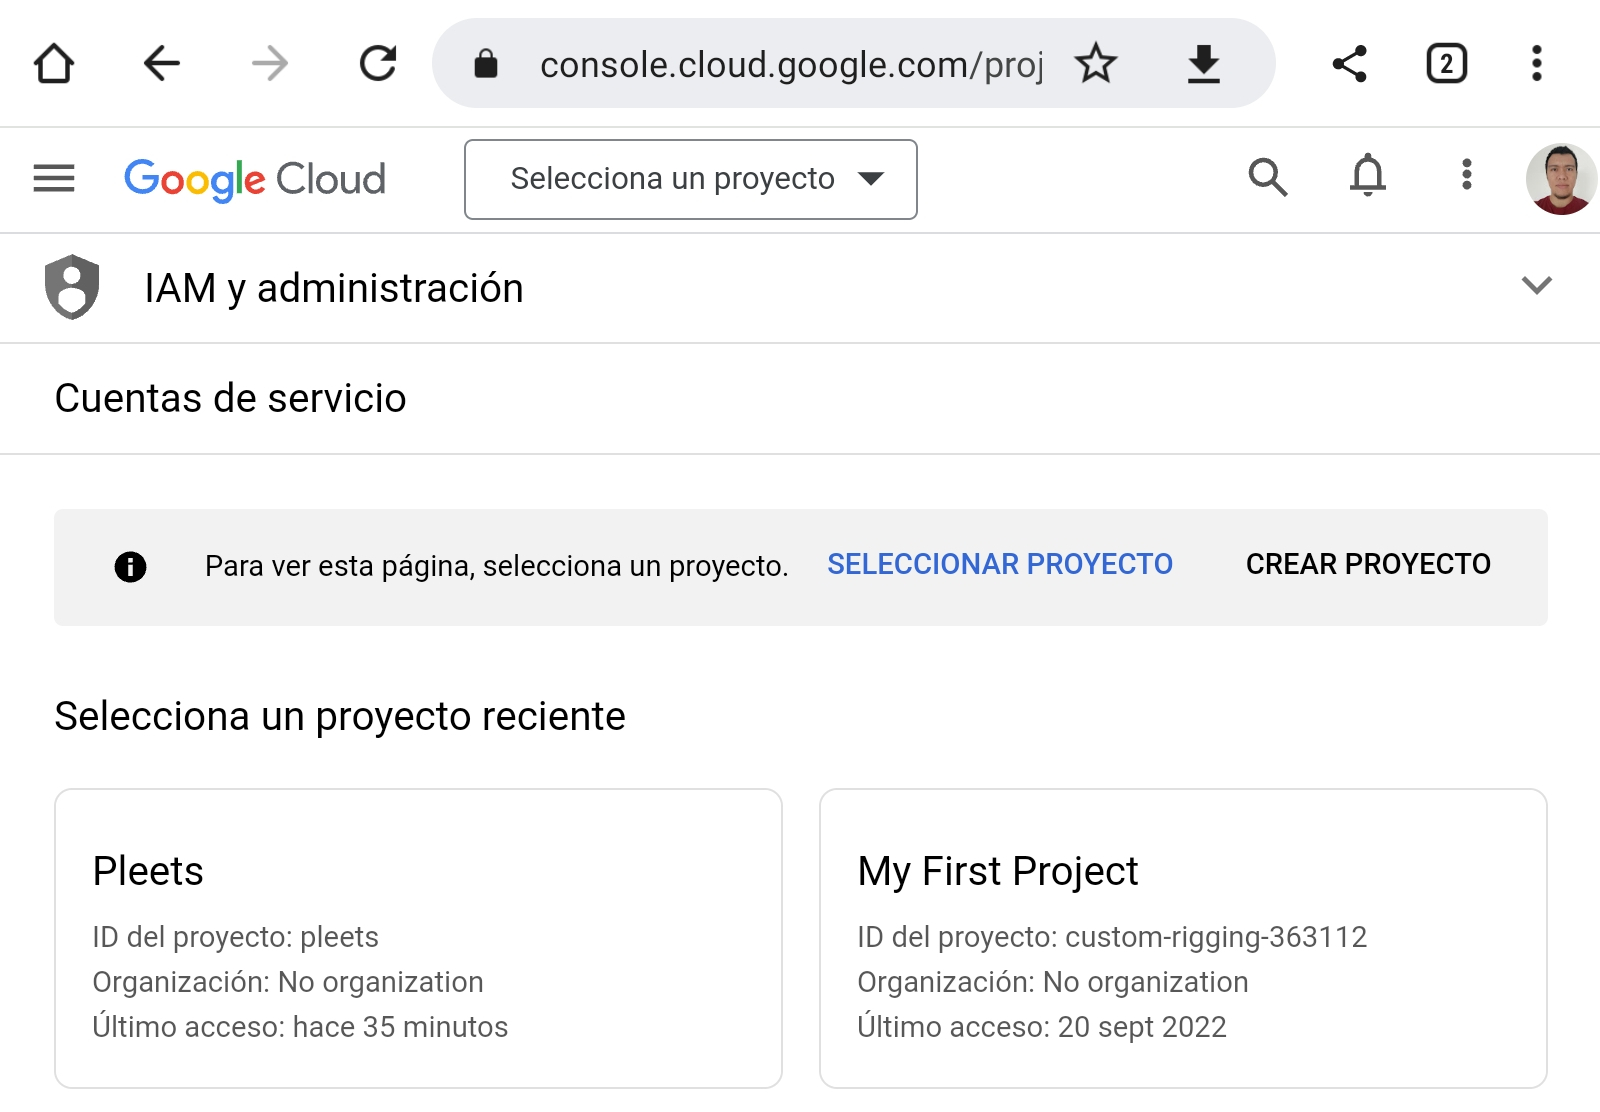 Listado de cuentas de servicio en la consola de Google Cloud